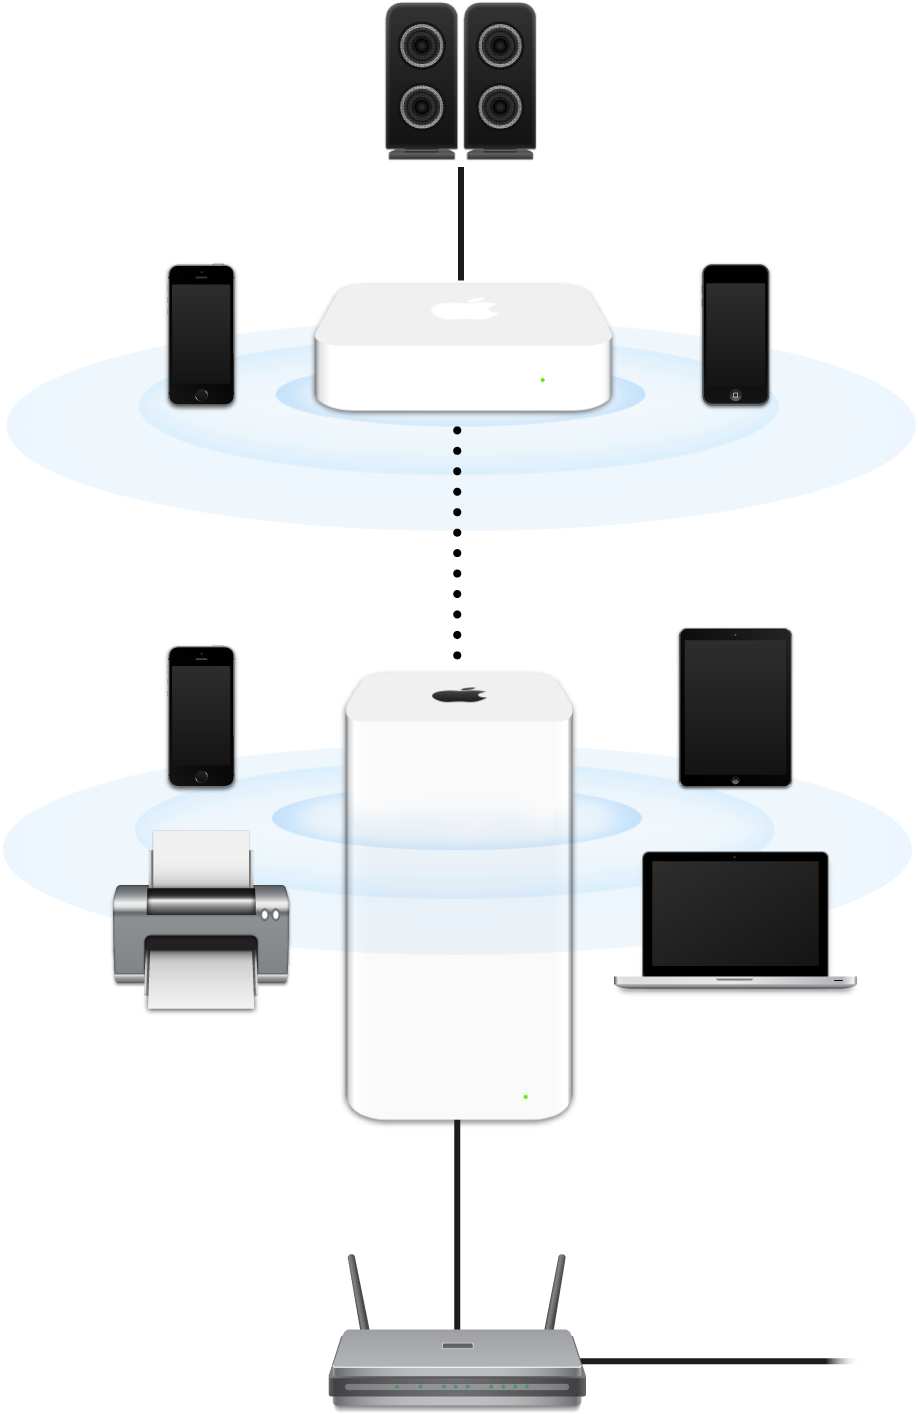 Laajennettu verkko, jossa näkyvät modeemiin liitetyt AirPort Extreme ja AirPort Express, jotka lähettävät useisiin laitteisiin.